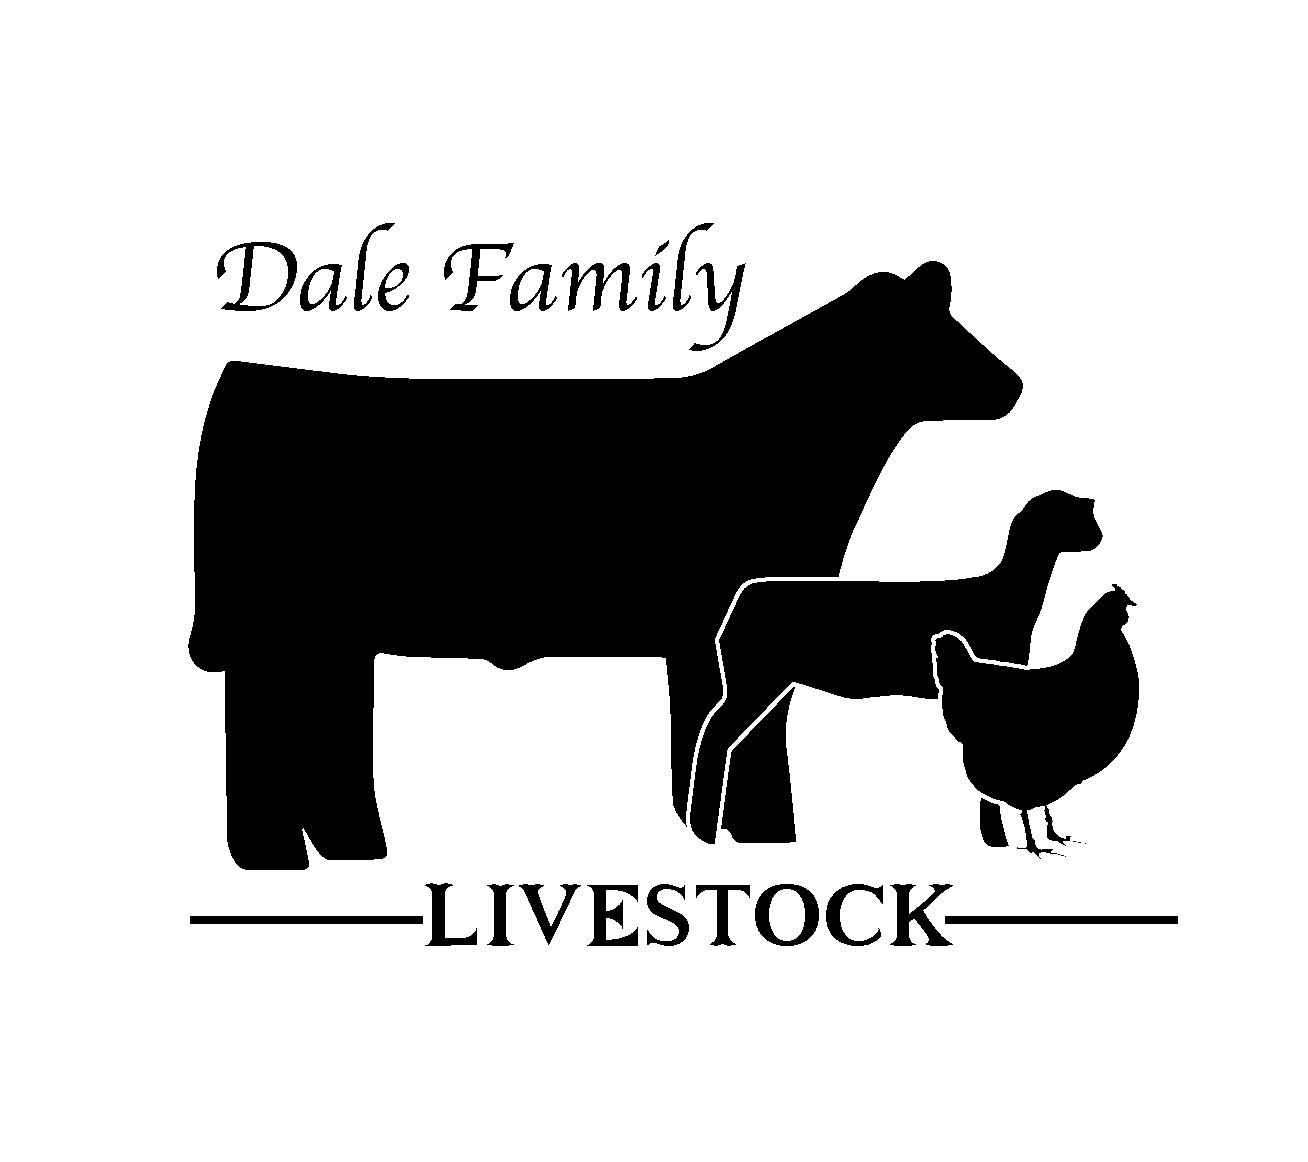 Dale Family Livestock